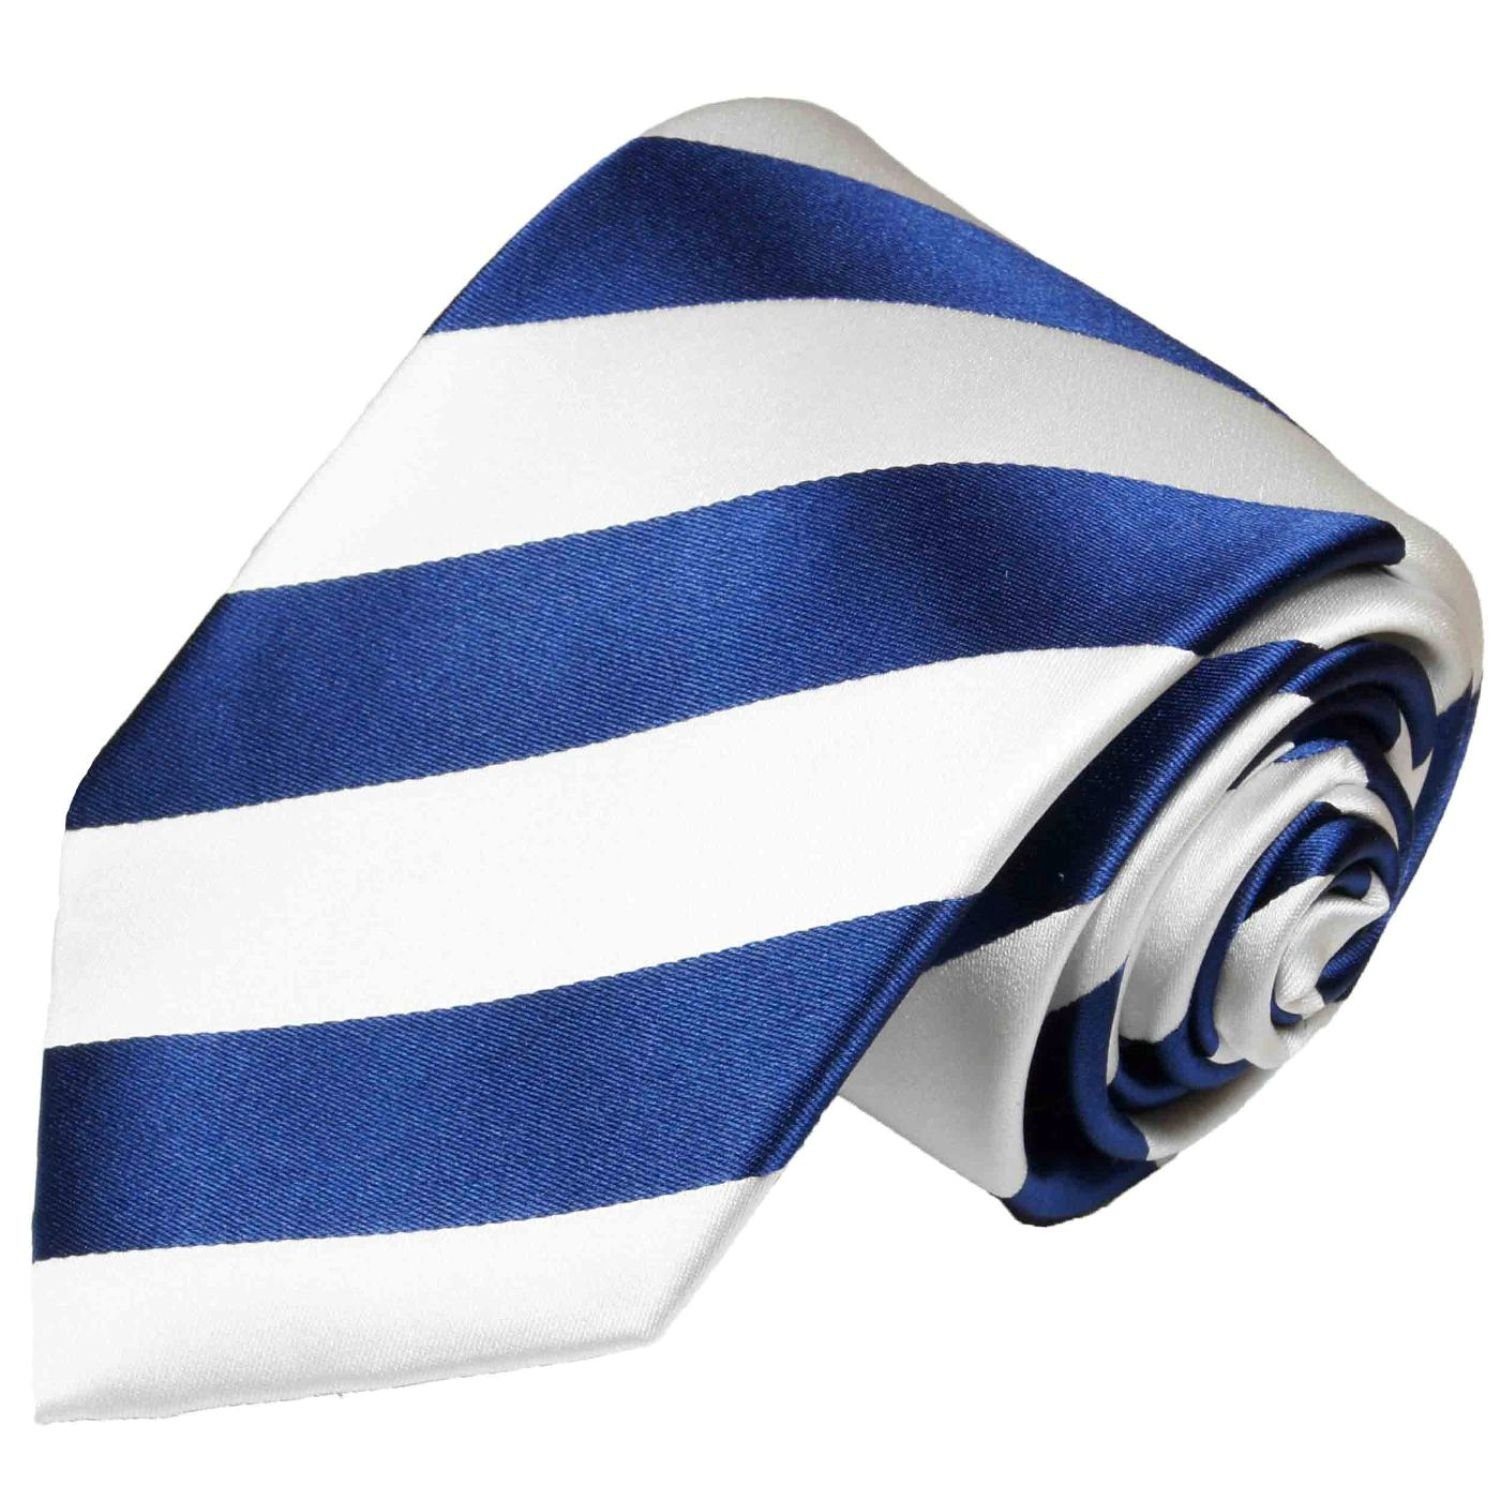 Paul Malone Krawatte Herren Seidenkrawatte Streifen Schlips modern gestreift 100% Seide Breit (8cm) blau